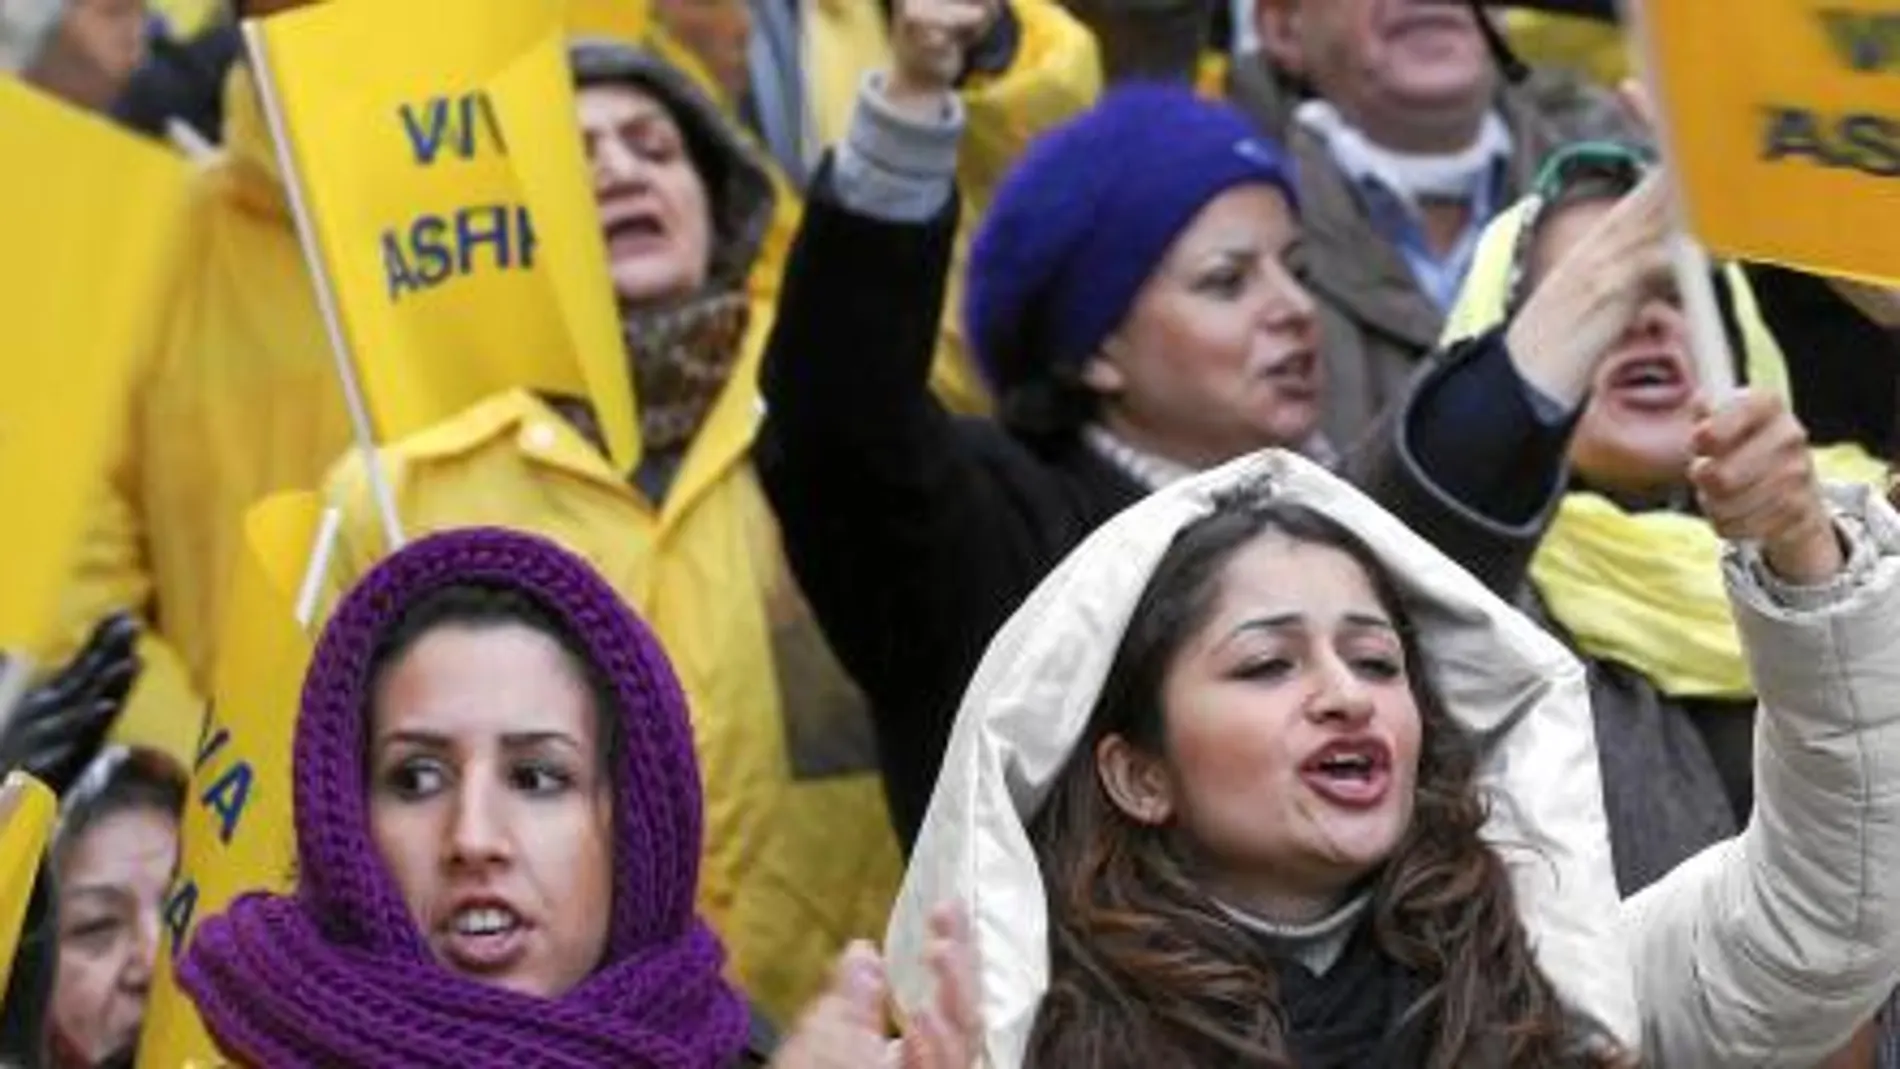 OLEADAS DE PROTESTAS. Un grupo de disidentes iraníes se manifestó ayer en Bruselas contra el régimen de Ahmadineyad